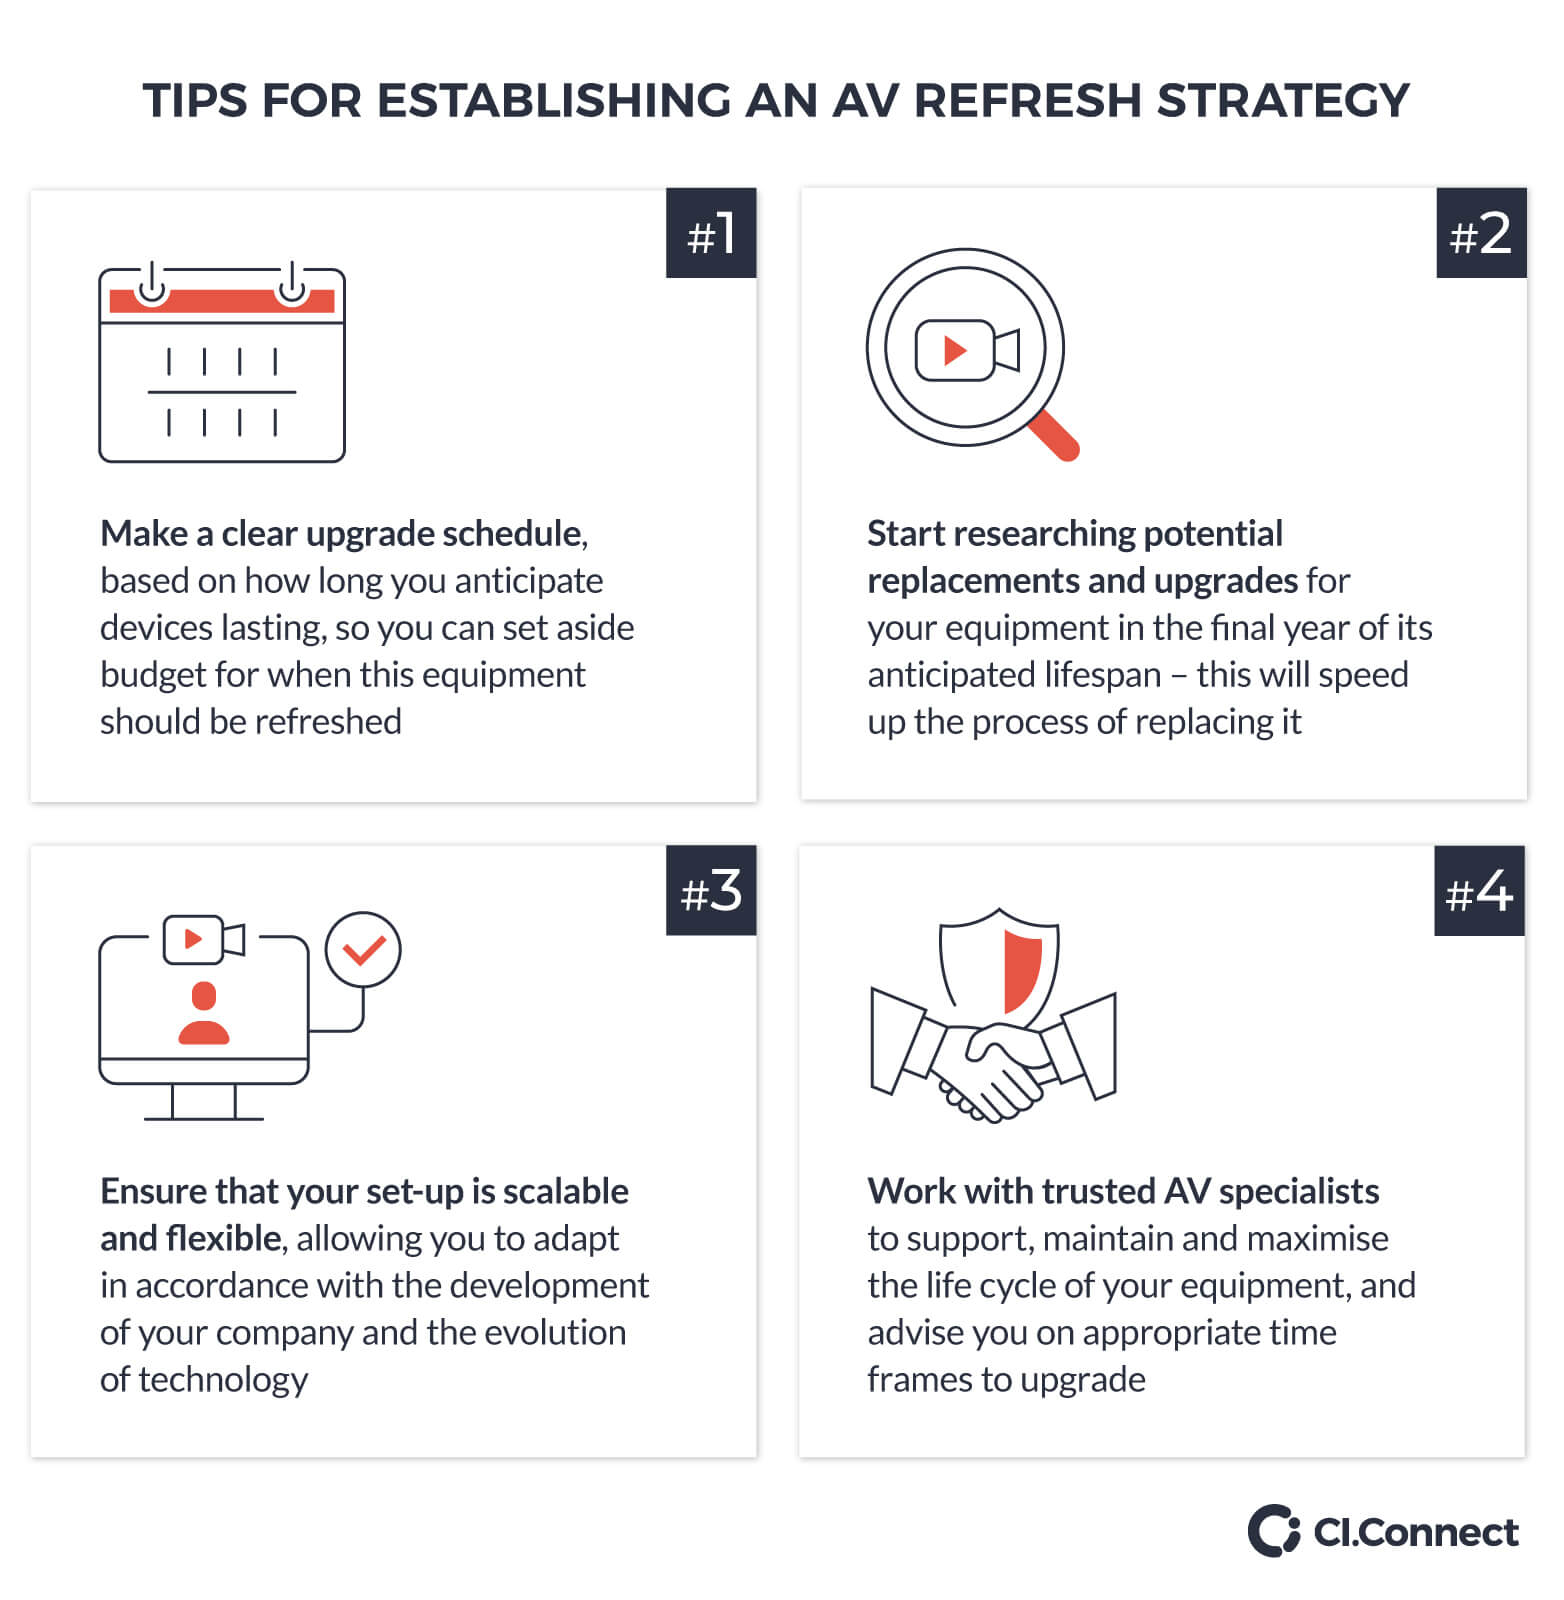 Tips for establishing an AV refresh strategy